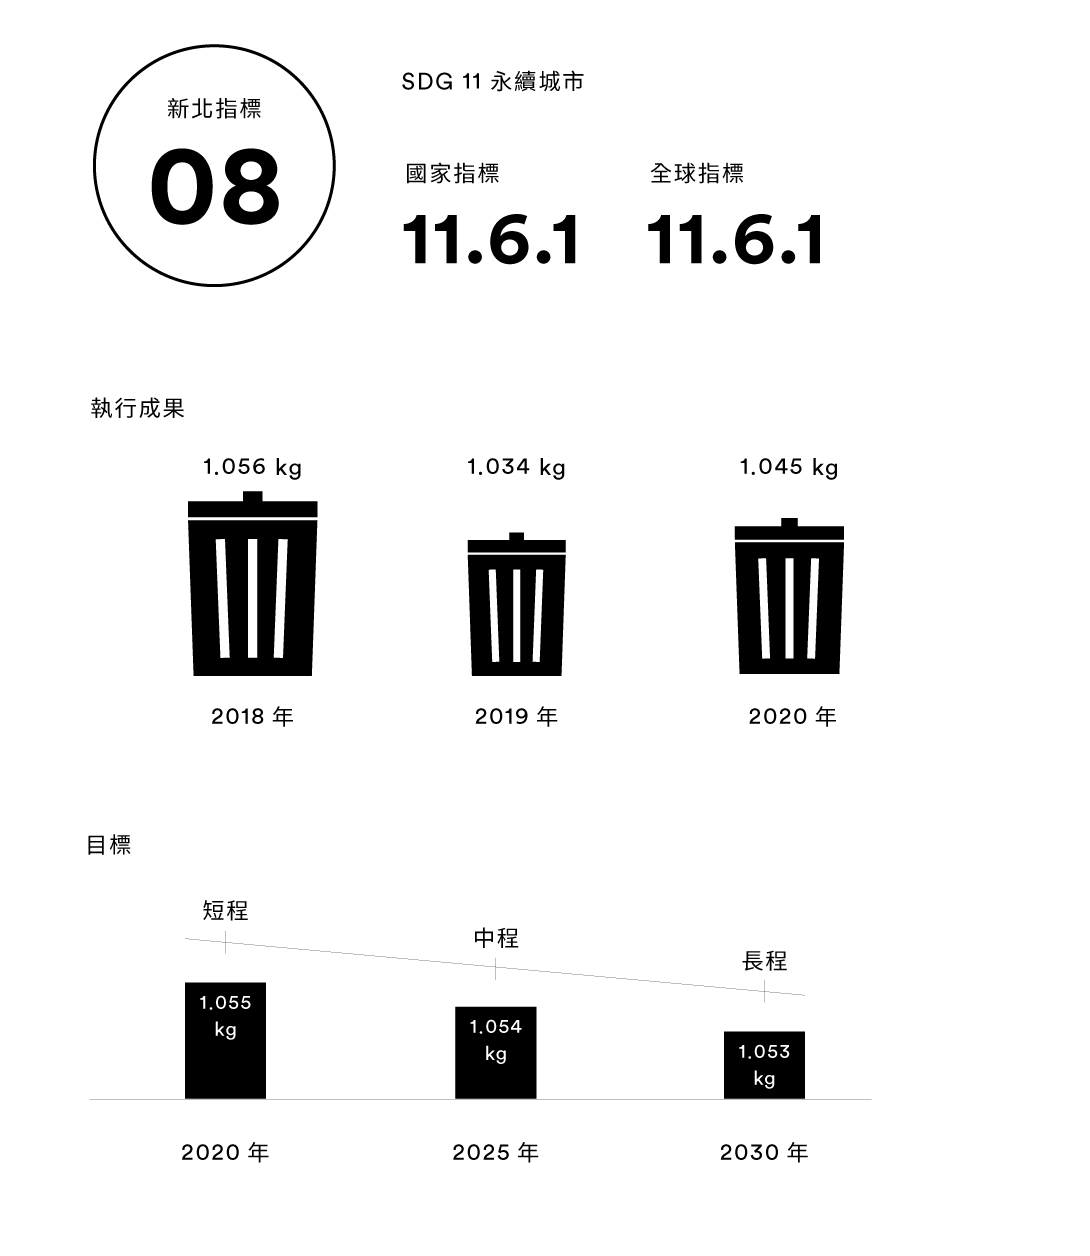 【新北指標08】平均每人每日一般廢棄物產生量